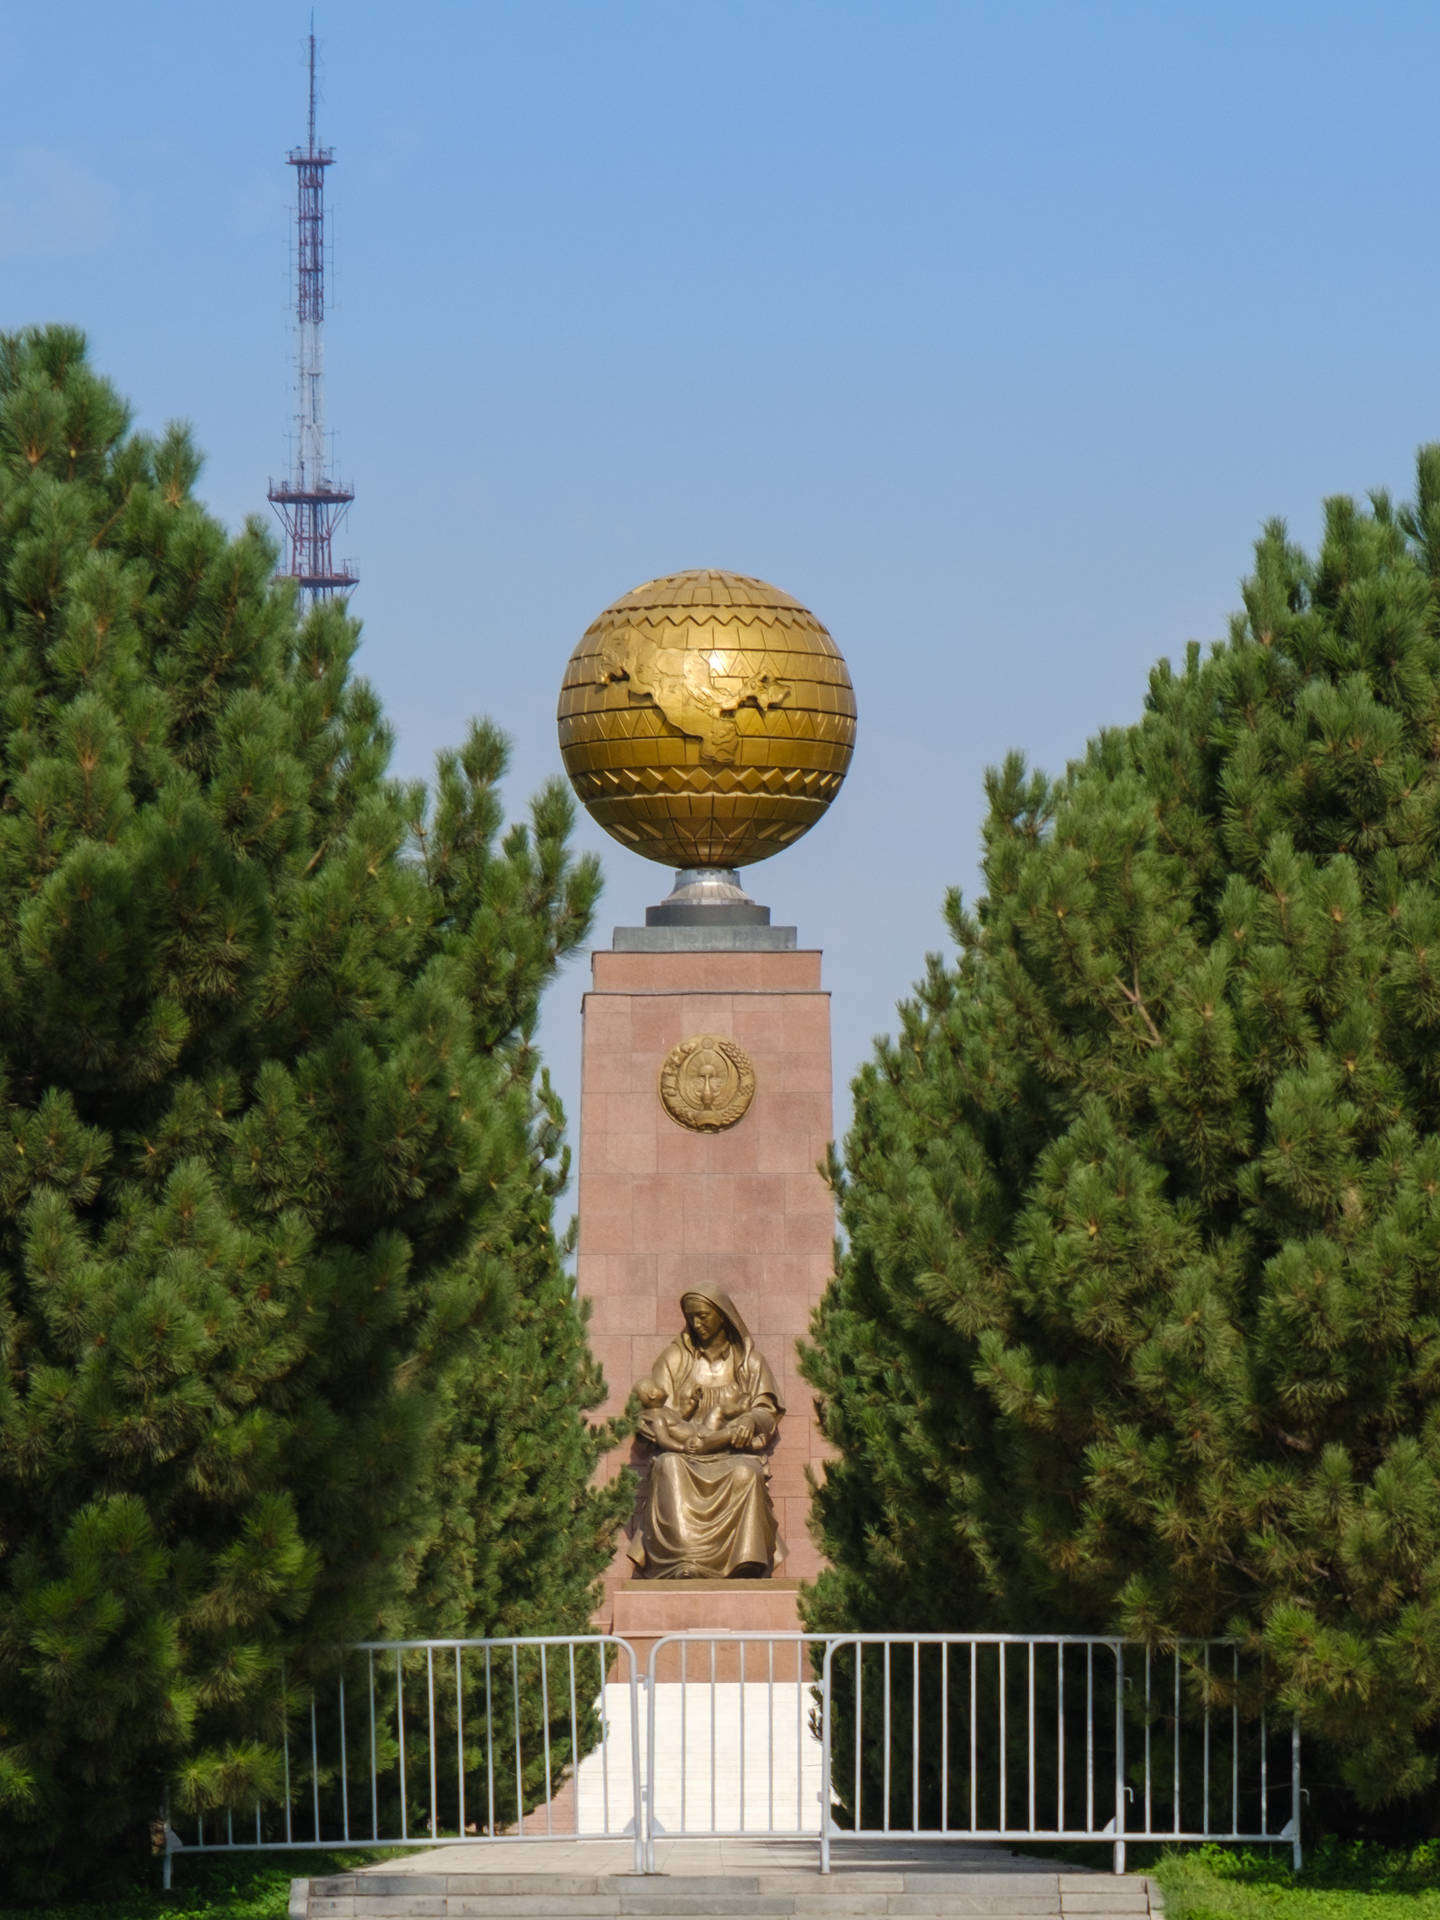 Uzbekistan Mustaqillik Square Background